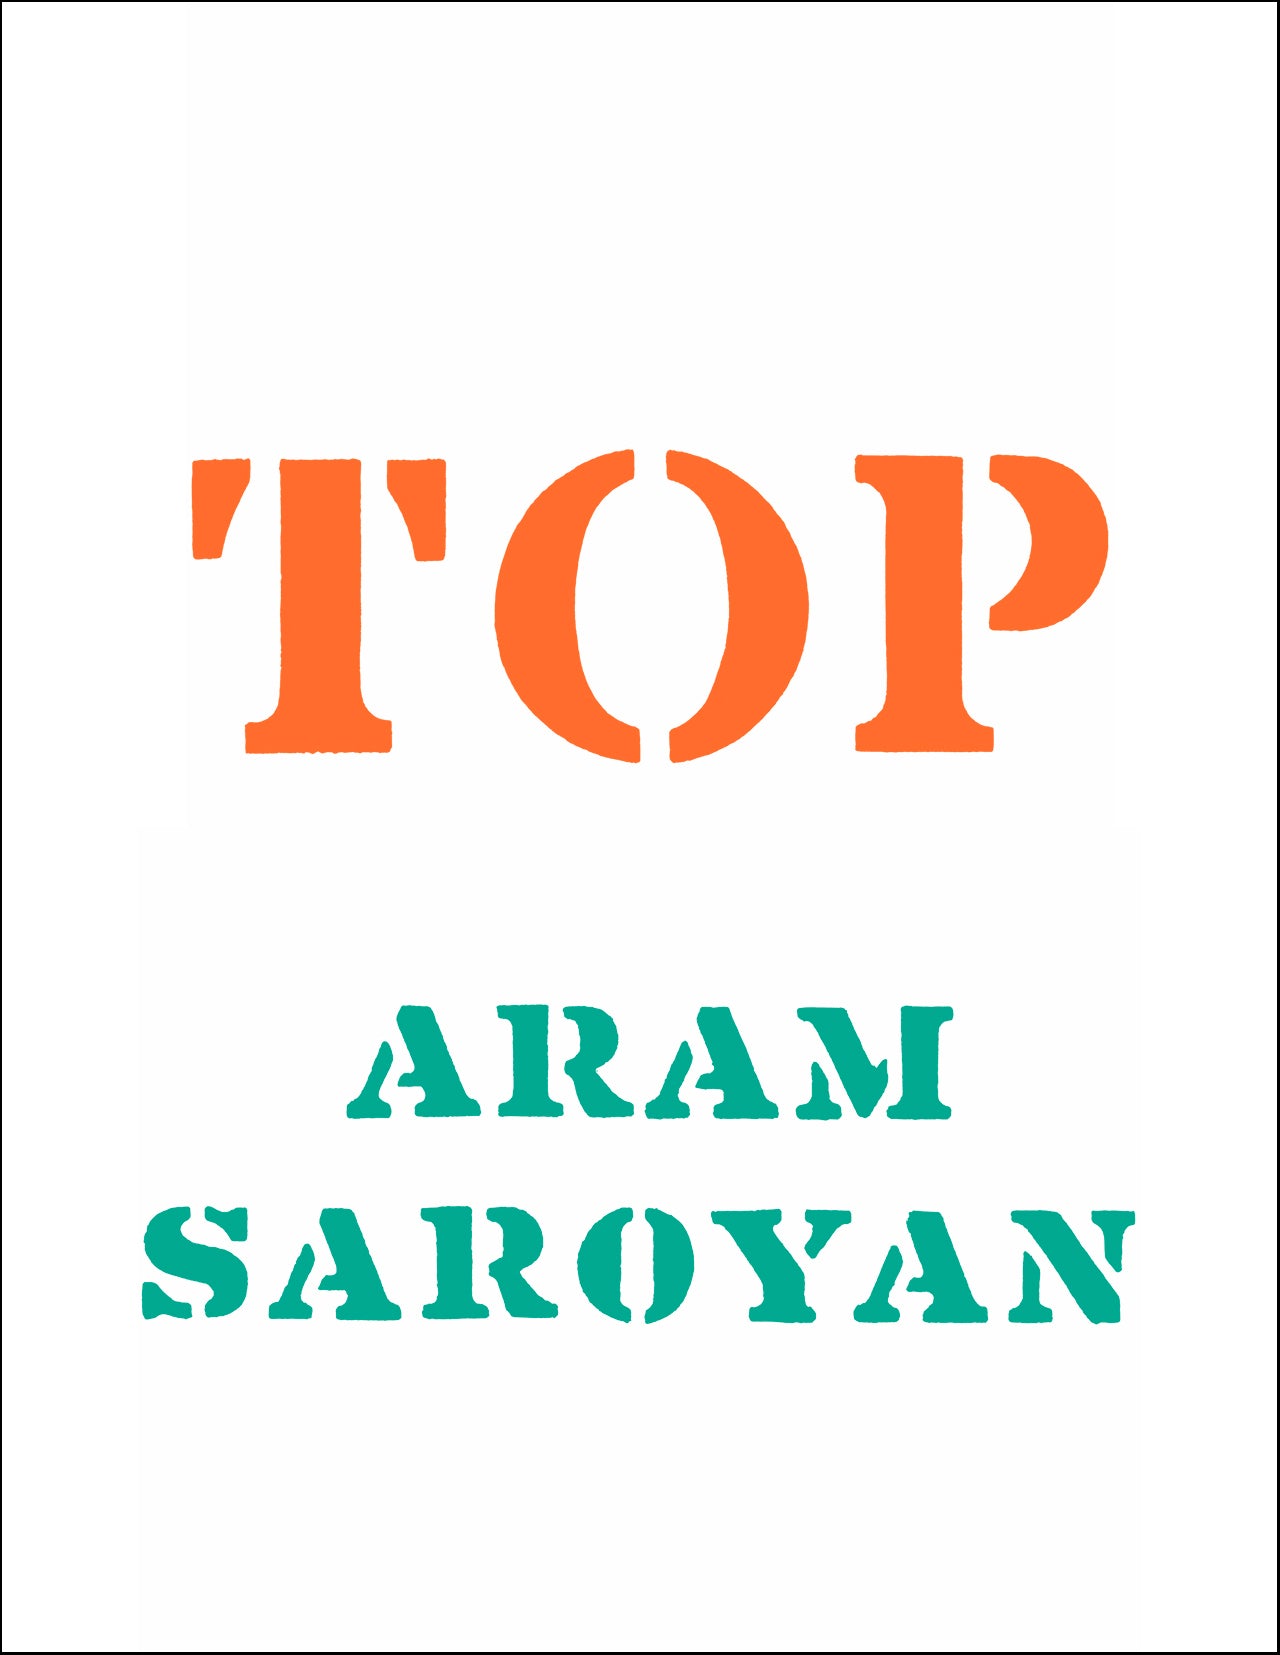 Aram Saroyan - TOP